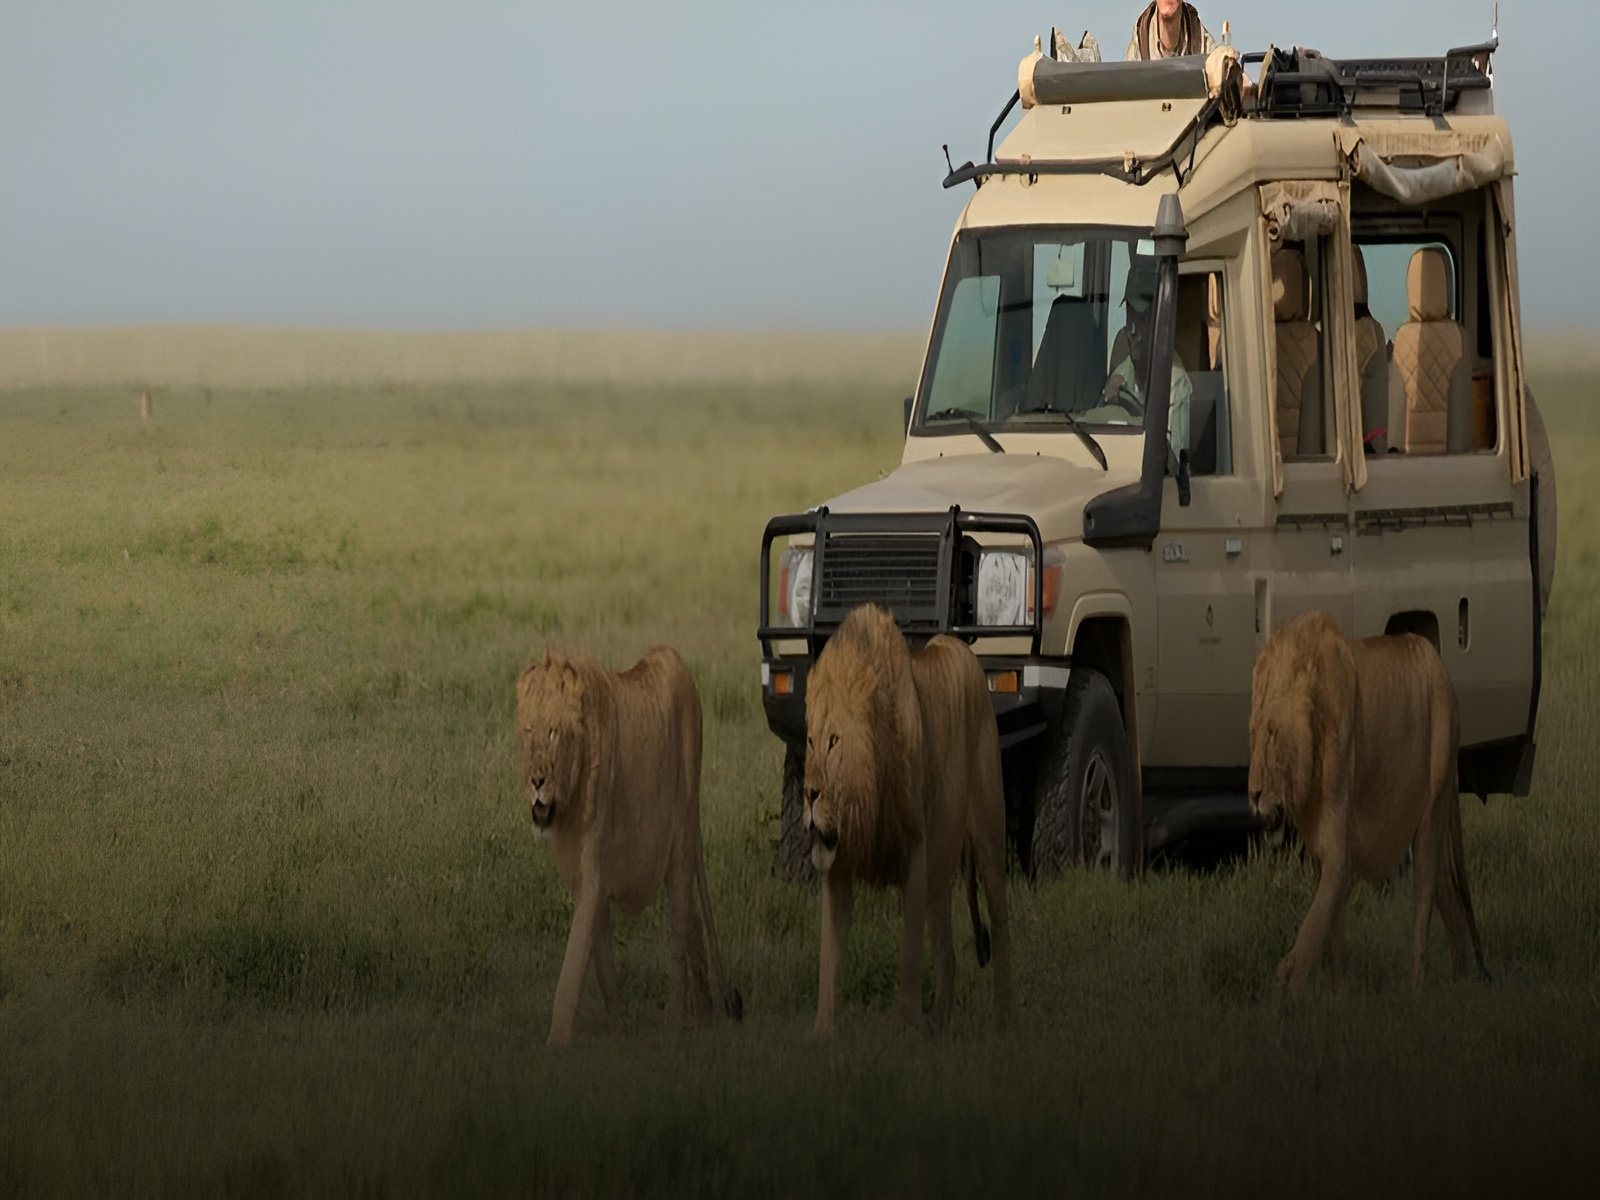 7 days tanzania safari